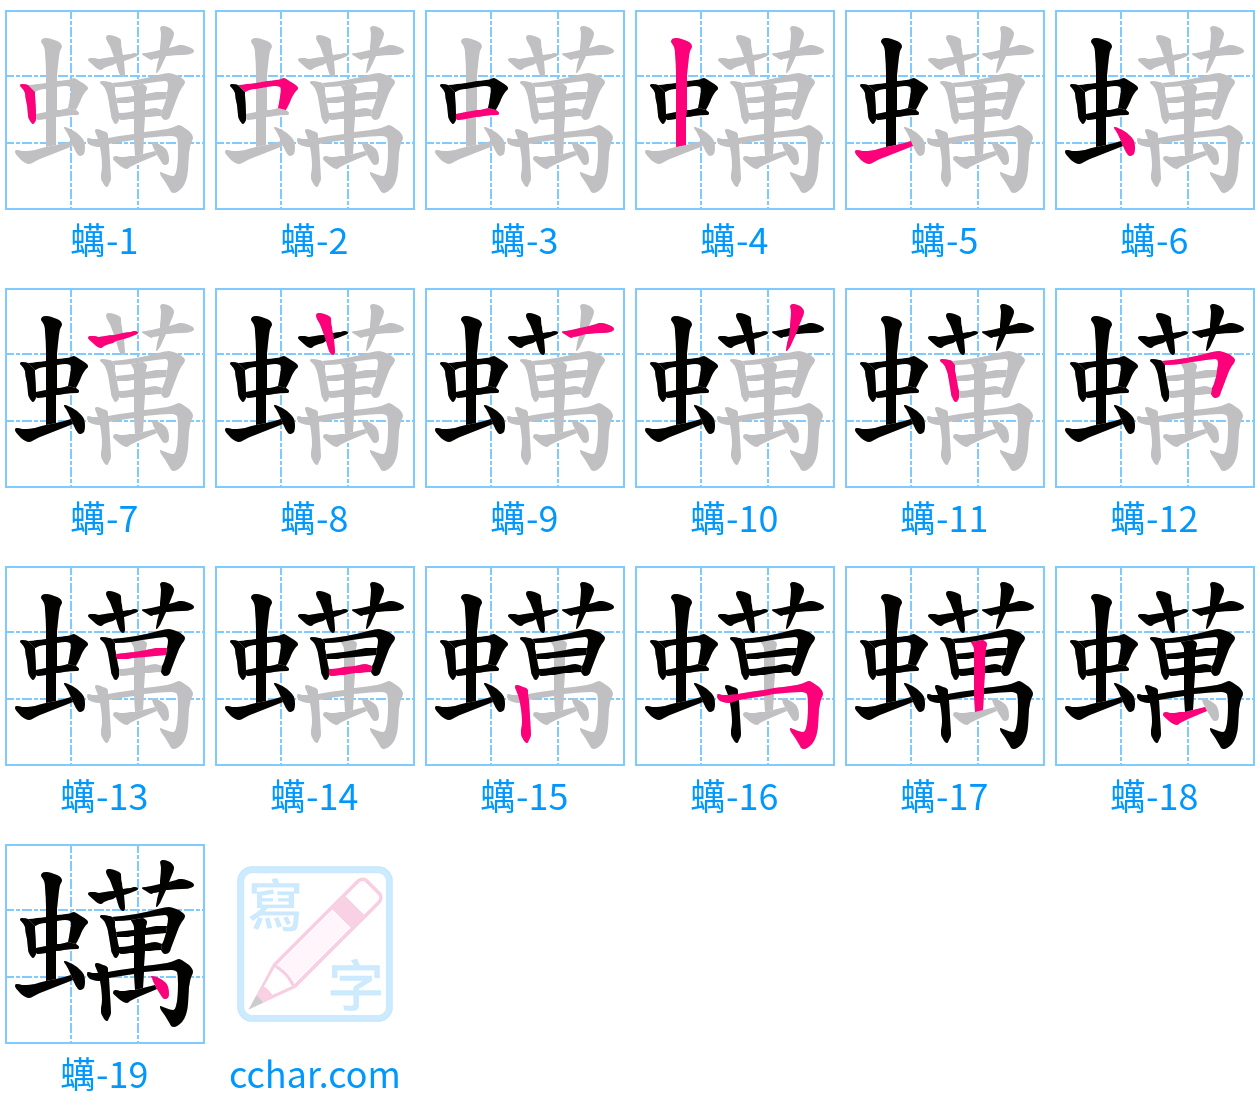 蠇 stroke order step-by-step diagram